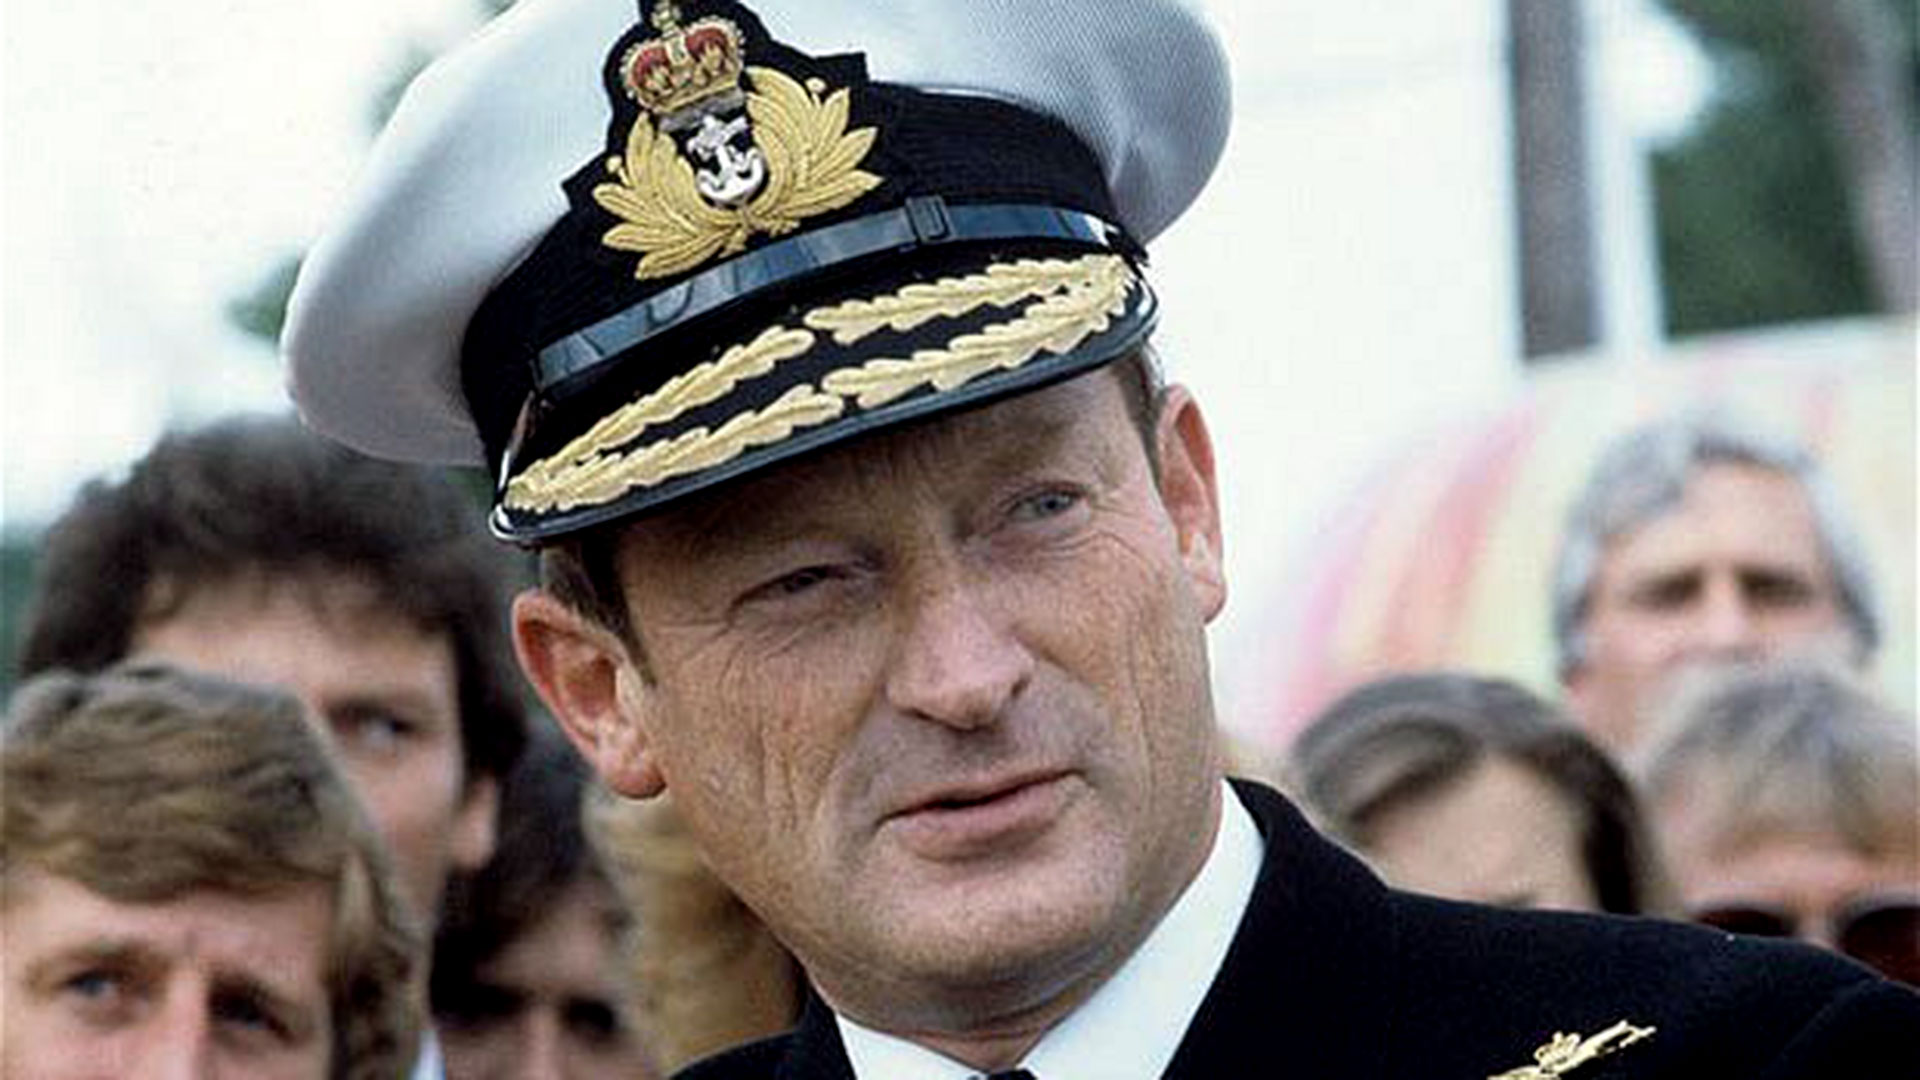  La orden de Woodward a los buques había sido inusual pero concreta: “Encuéntrelo y tráigame su sombrero”